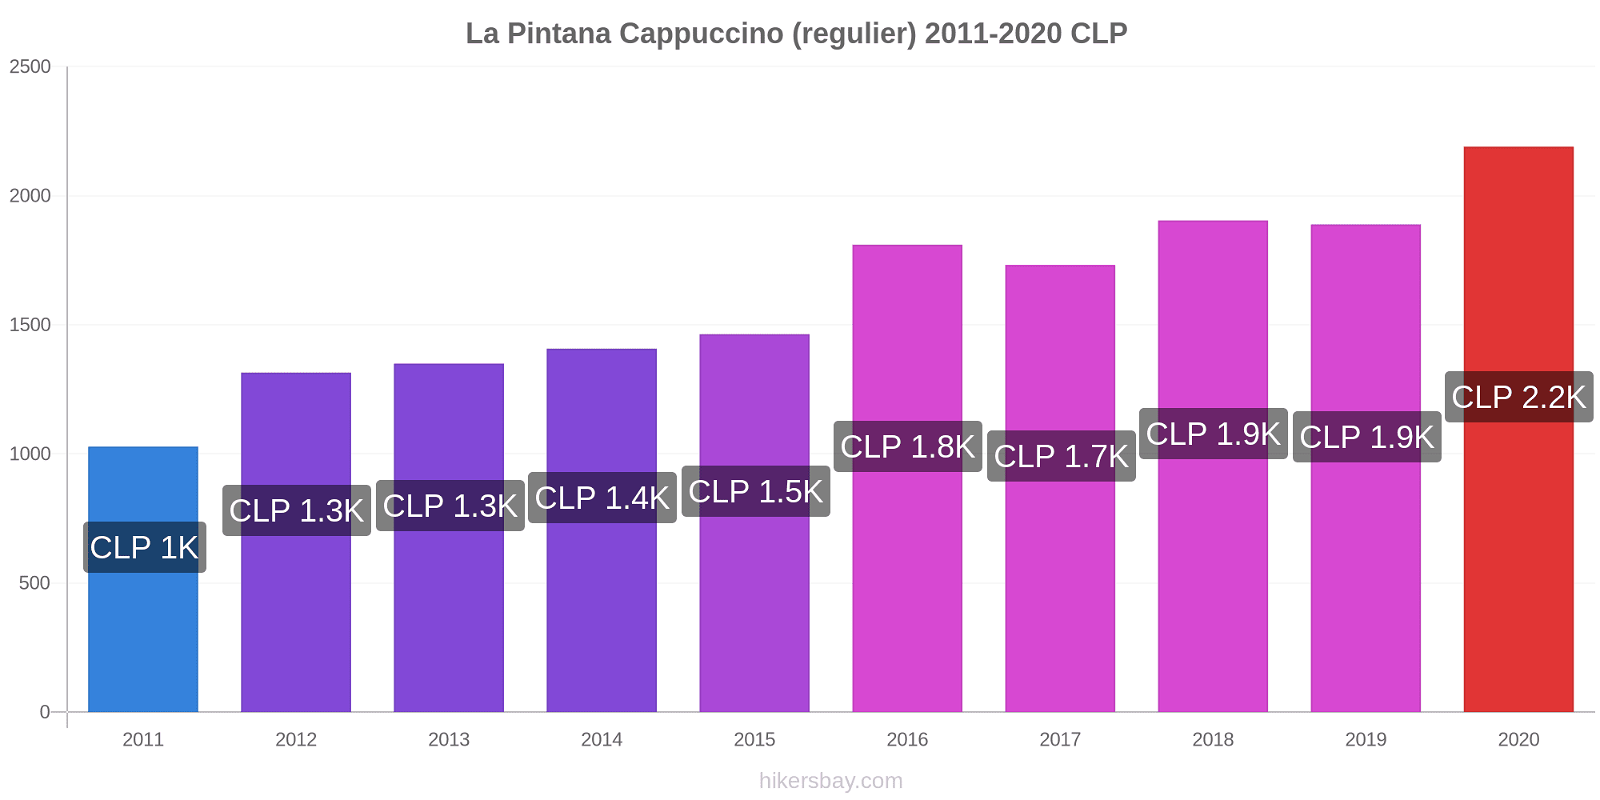 La Pintana prijswijzigingen Cappuccino (regelmatige) hikersbay.com